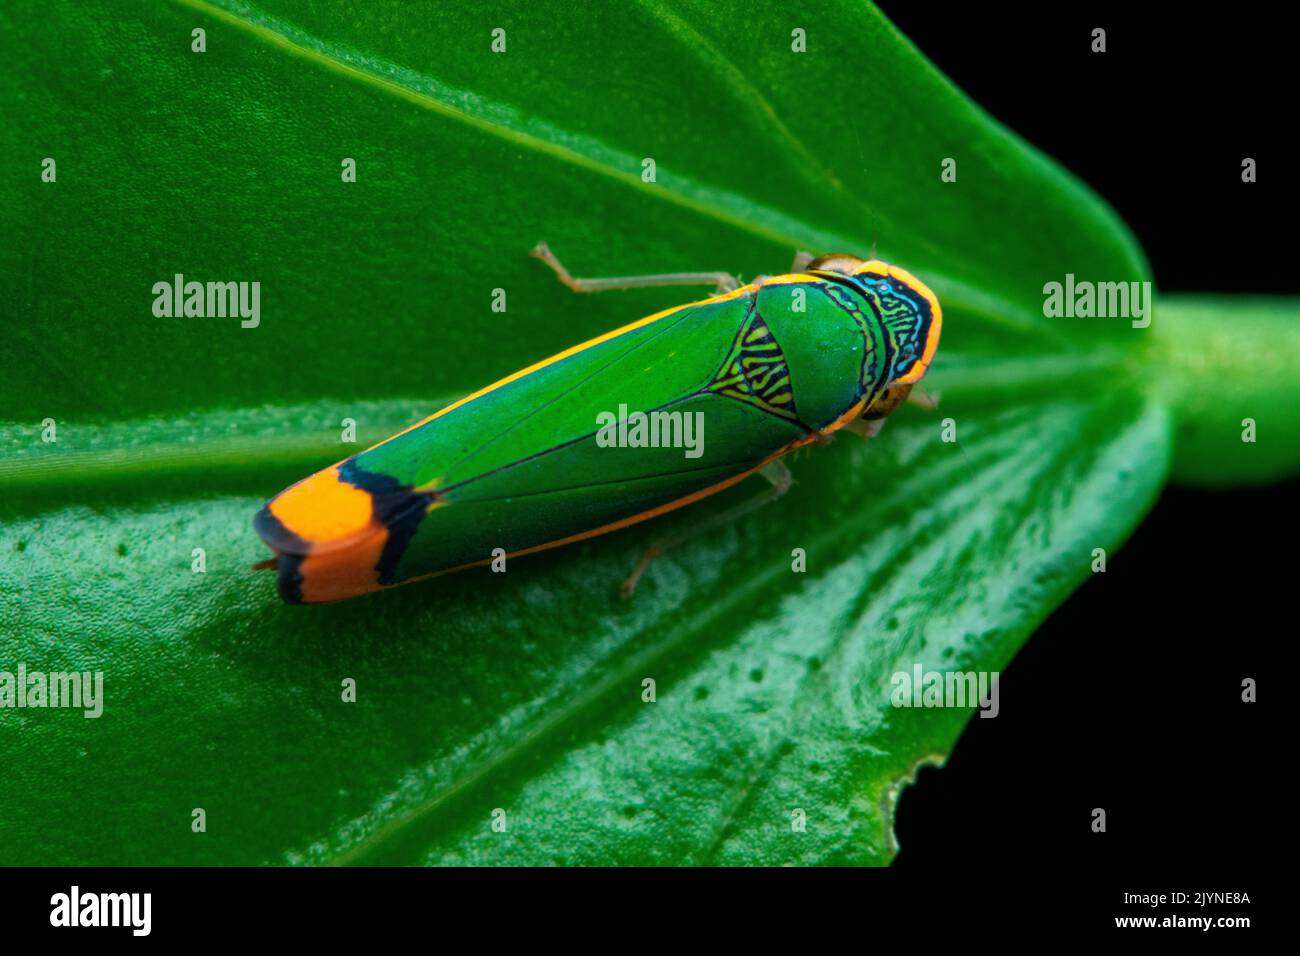 Leafhopper (Stephanolla rufoapicata) on a leaf, Carate, Osa, Costa Rica Stock Photo